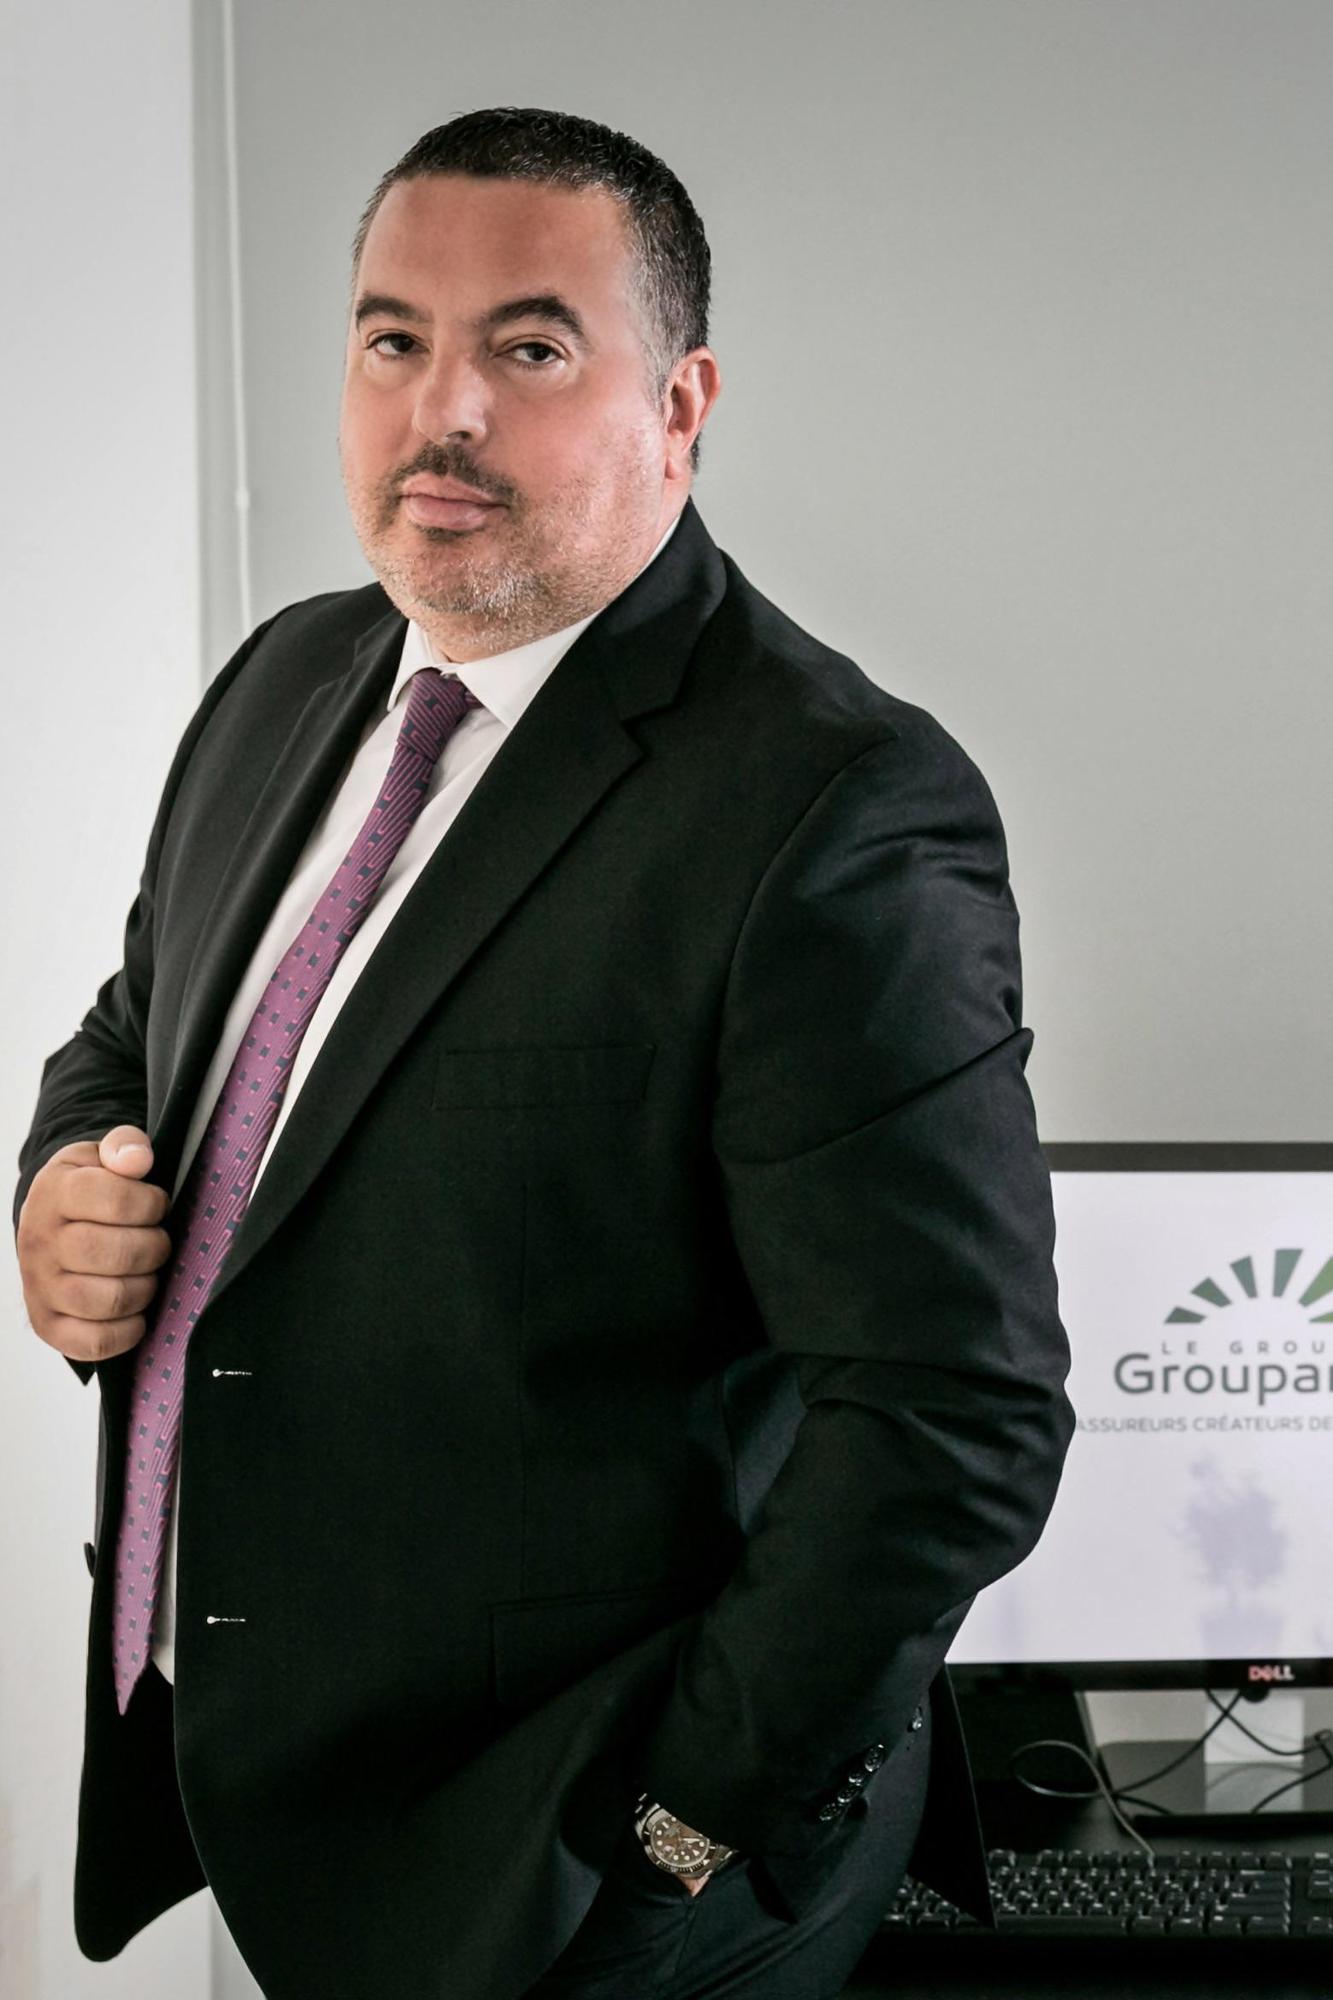 Xρήστος Κάτσιος, CEO Groupama Ασφαλιστικκή